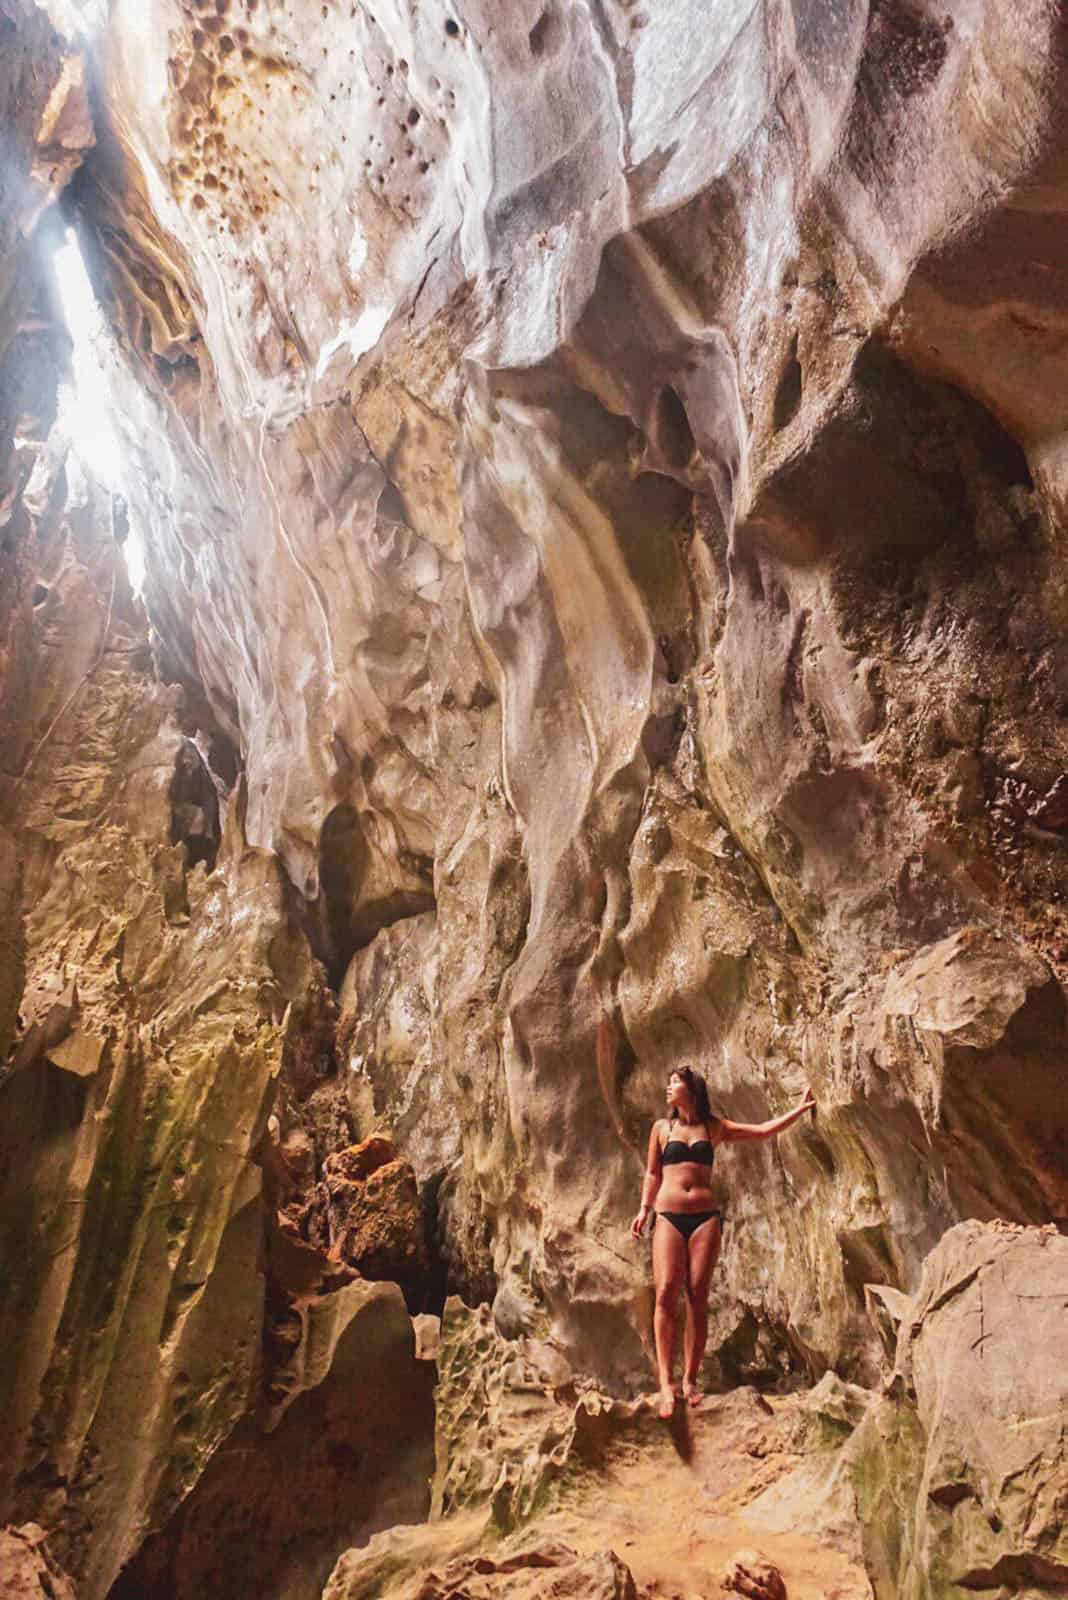 Cudugnon Cave in El nido, Philippines